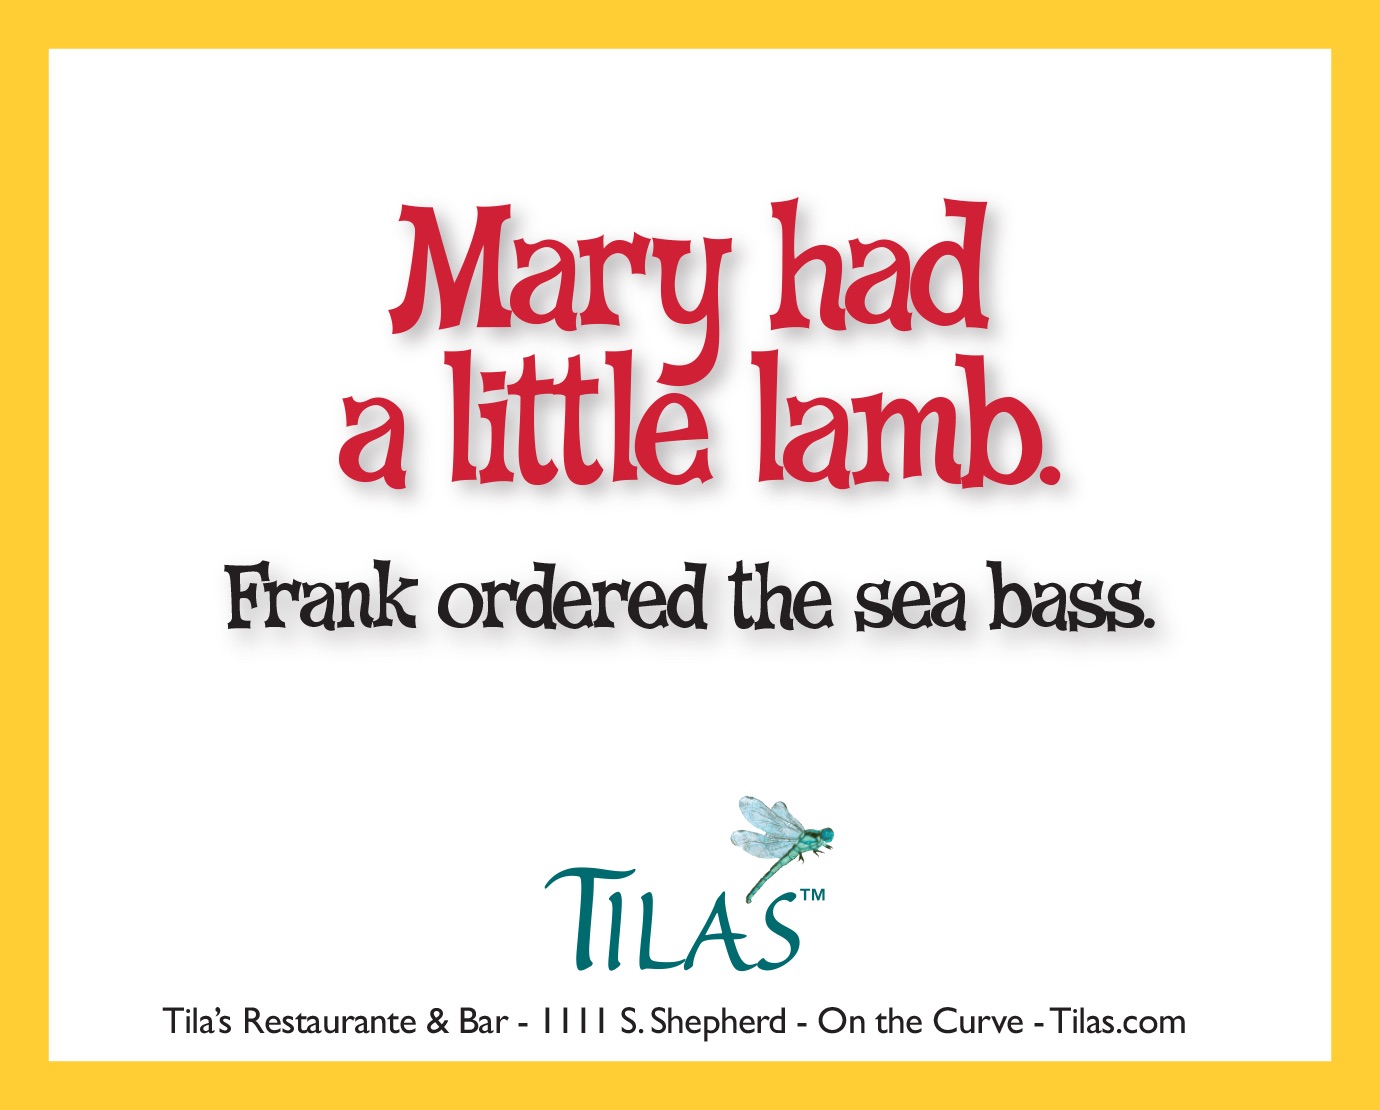 Tila's Restaurante advertising 